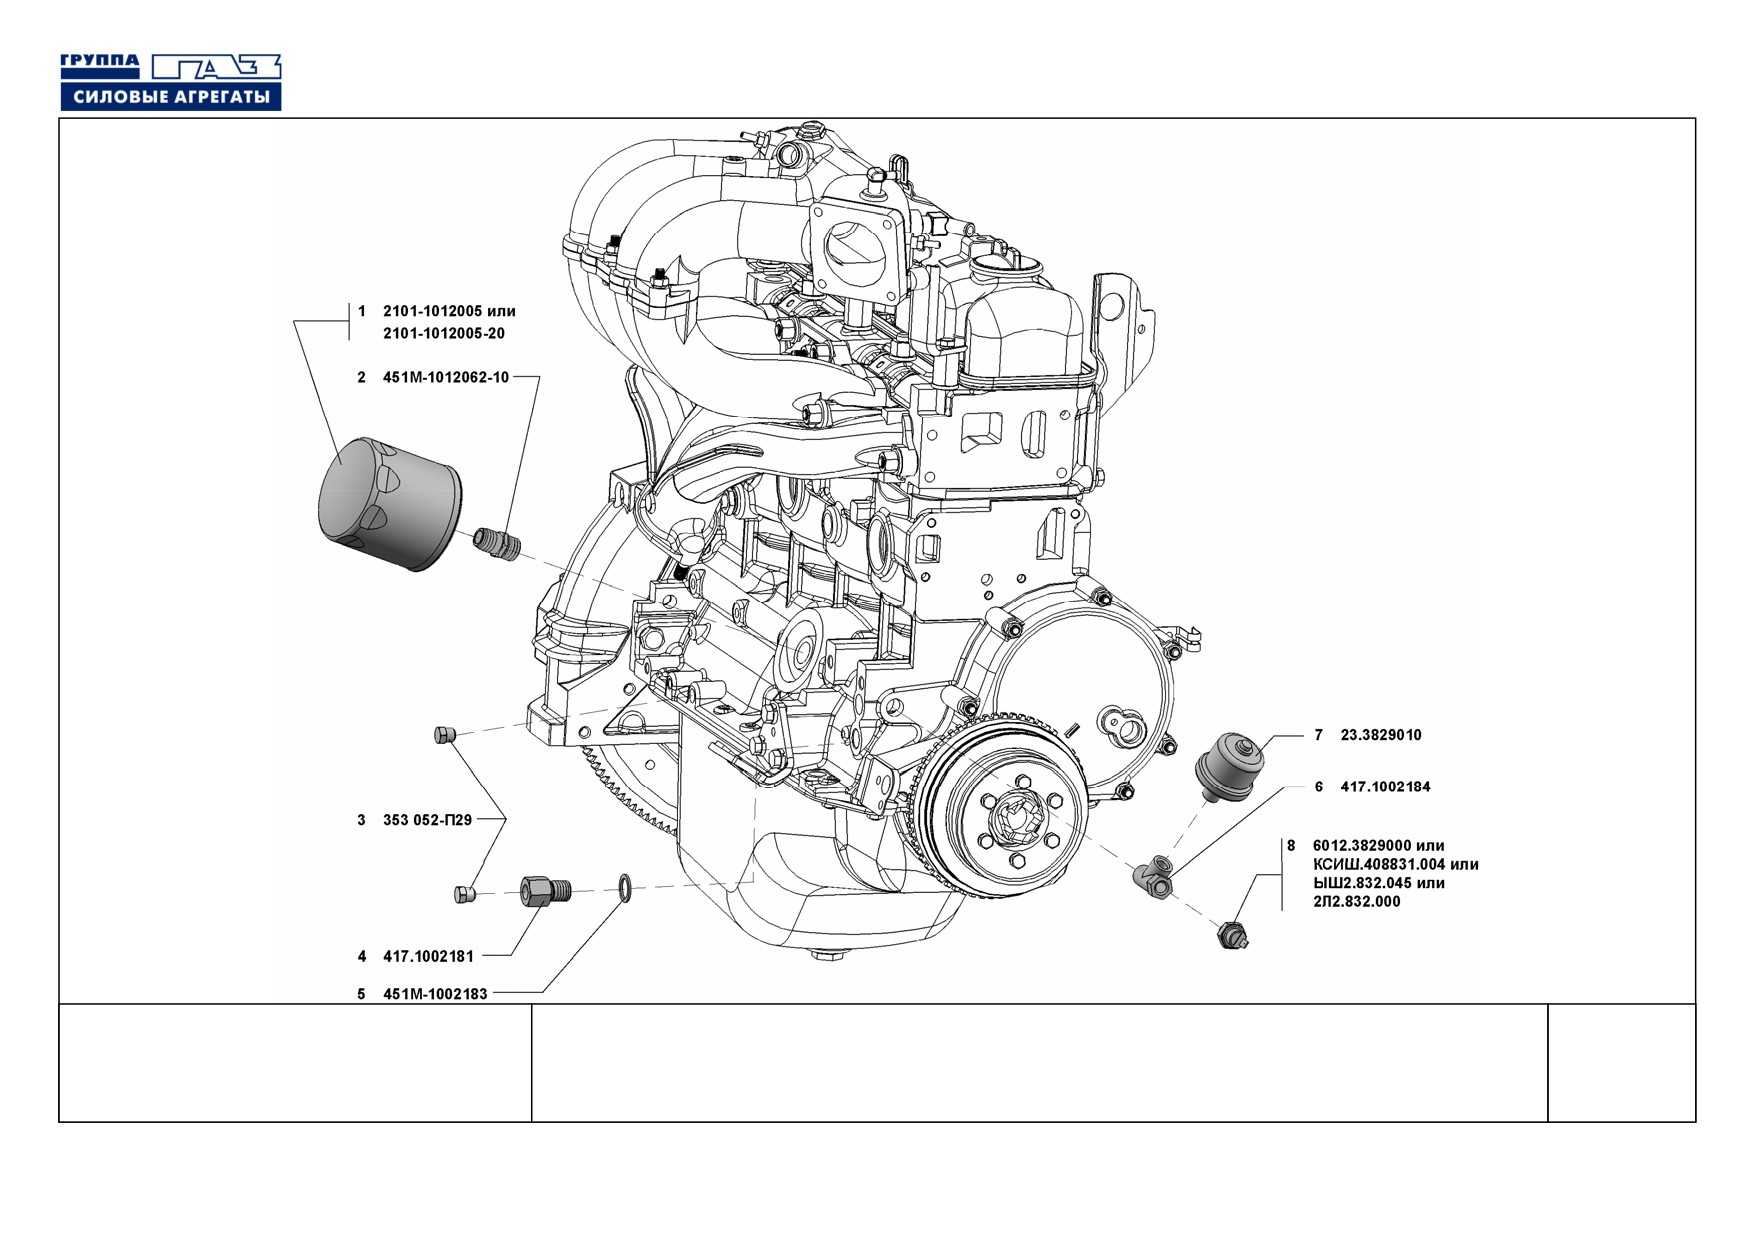 Двигатель уаз умз 421, технические характеристики, какое масло лить, ремонт двигателя умз 421, доработки и тюнинг, схема устройства, рекомендации по обслуживанию